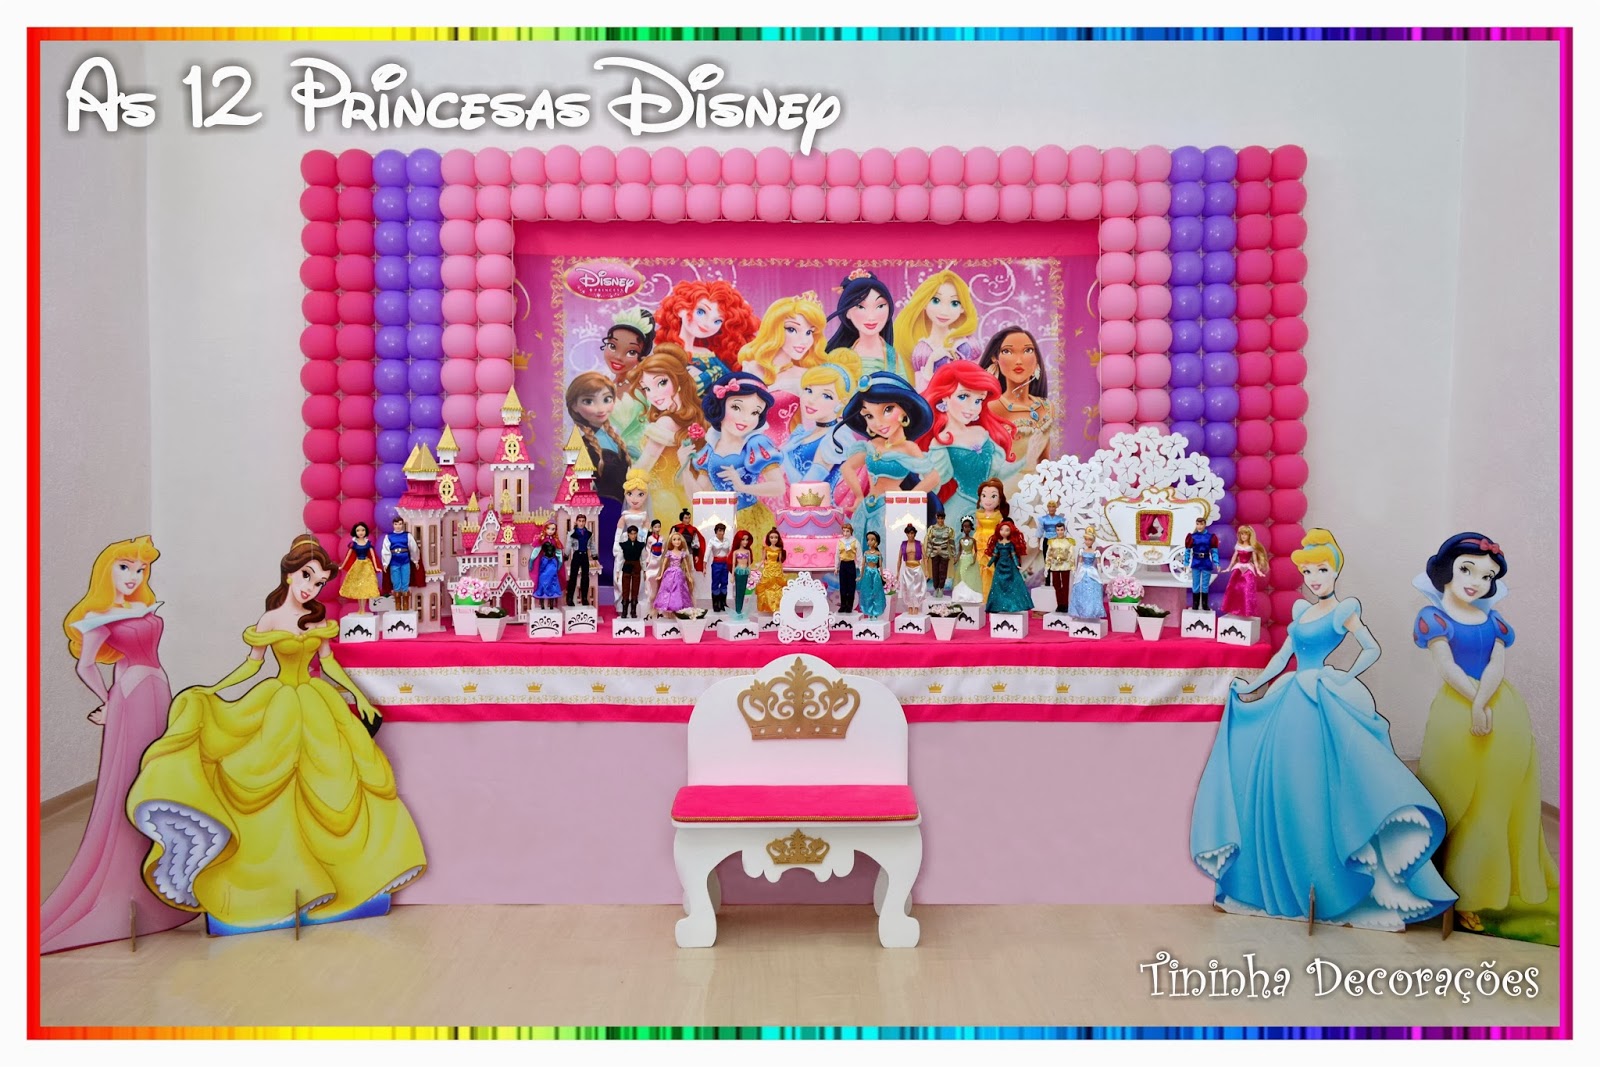 As 12 Princesas Disney